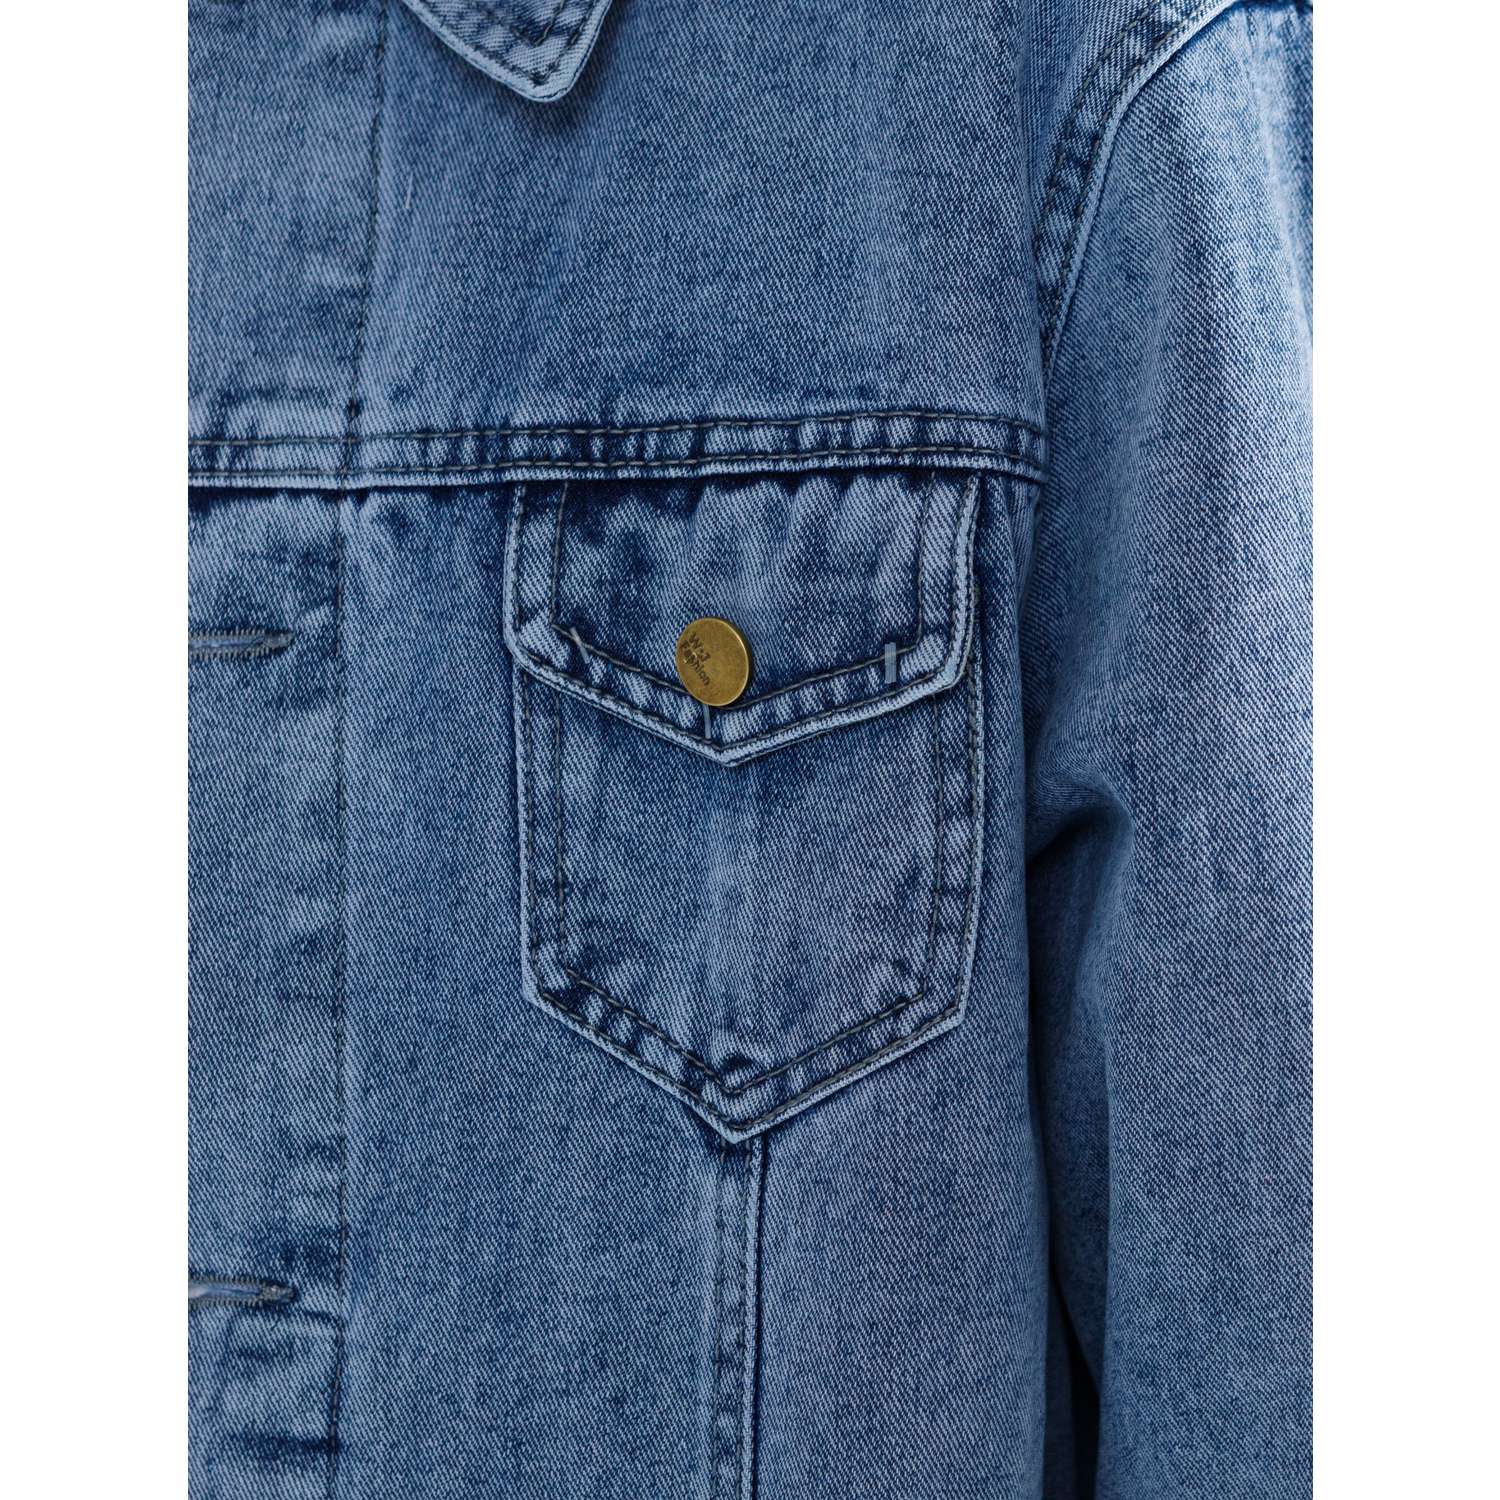 Куртка джинсовая СИНИЙ МИР M1012-D63 - фото 16